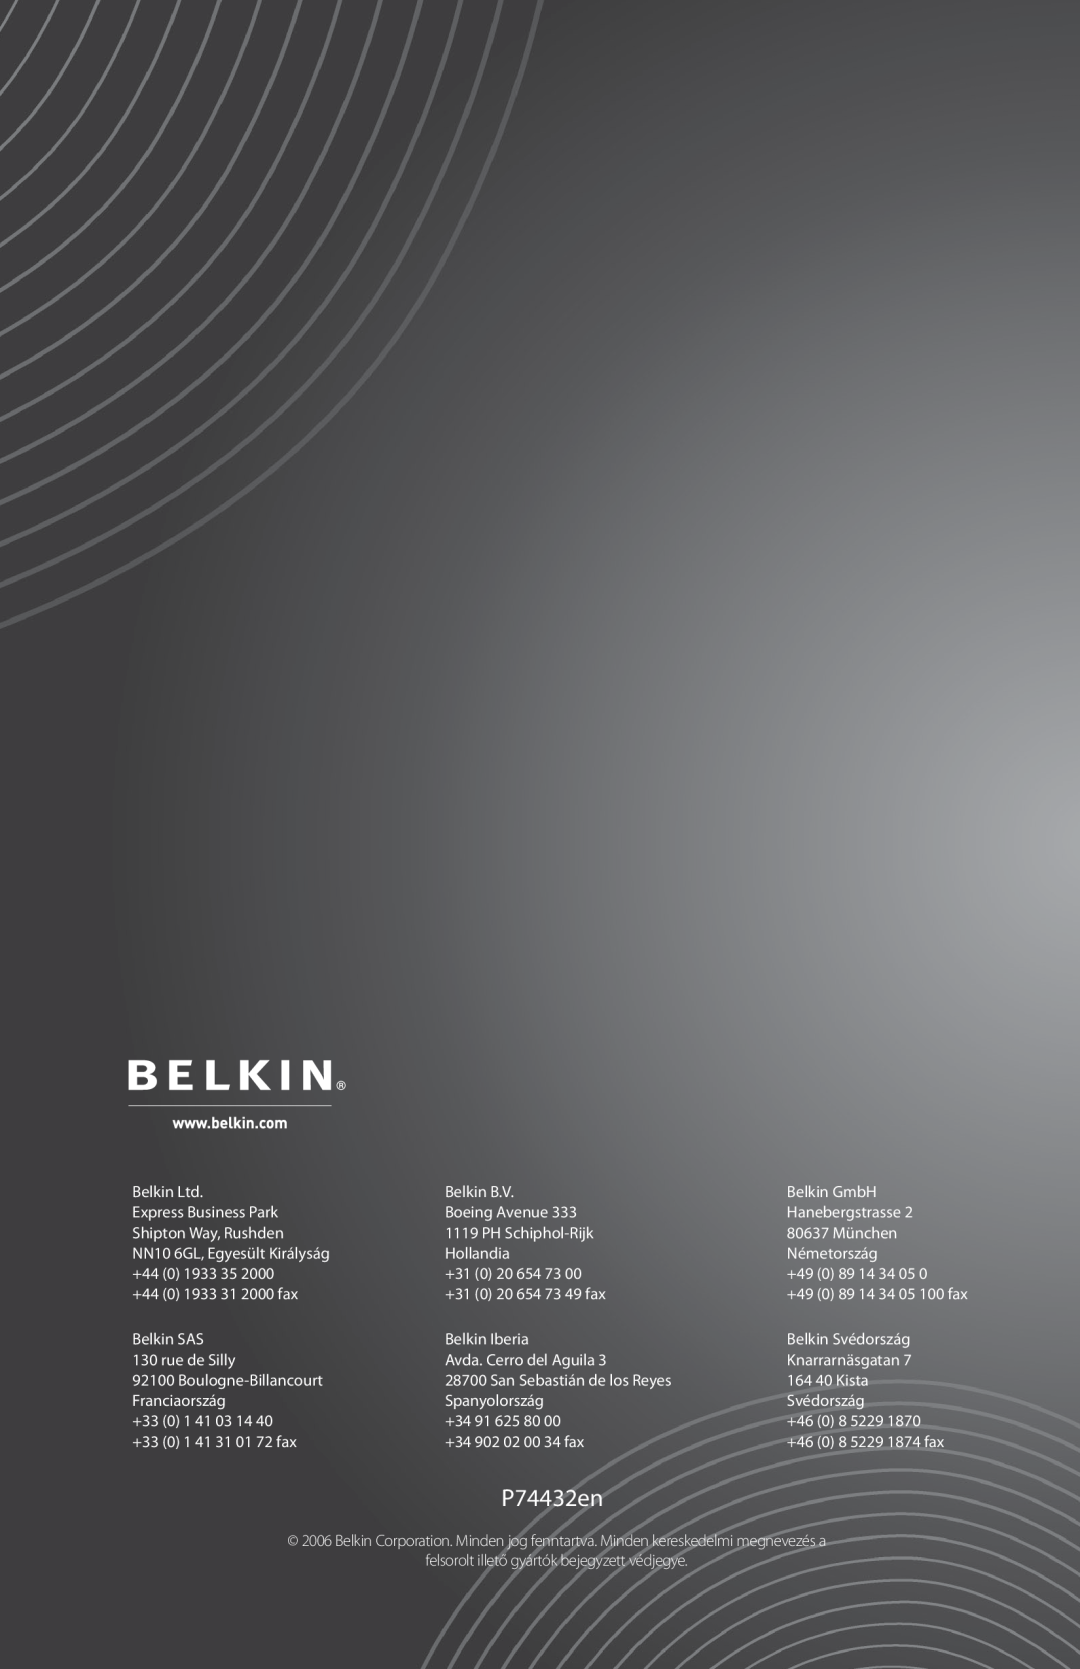 Belkin F9G623EN3M, F9G823EN3M user manual Audio Videó Digitális Készletek, Bevezető, P74432en, 89 14 34 05 100 fax 